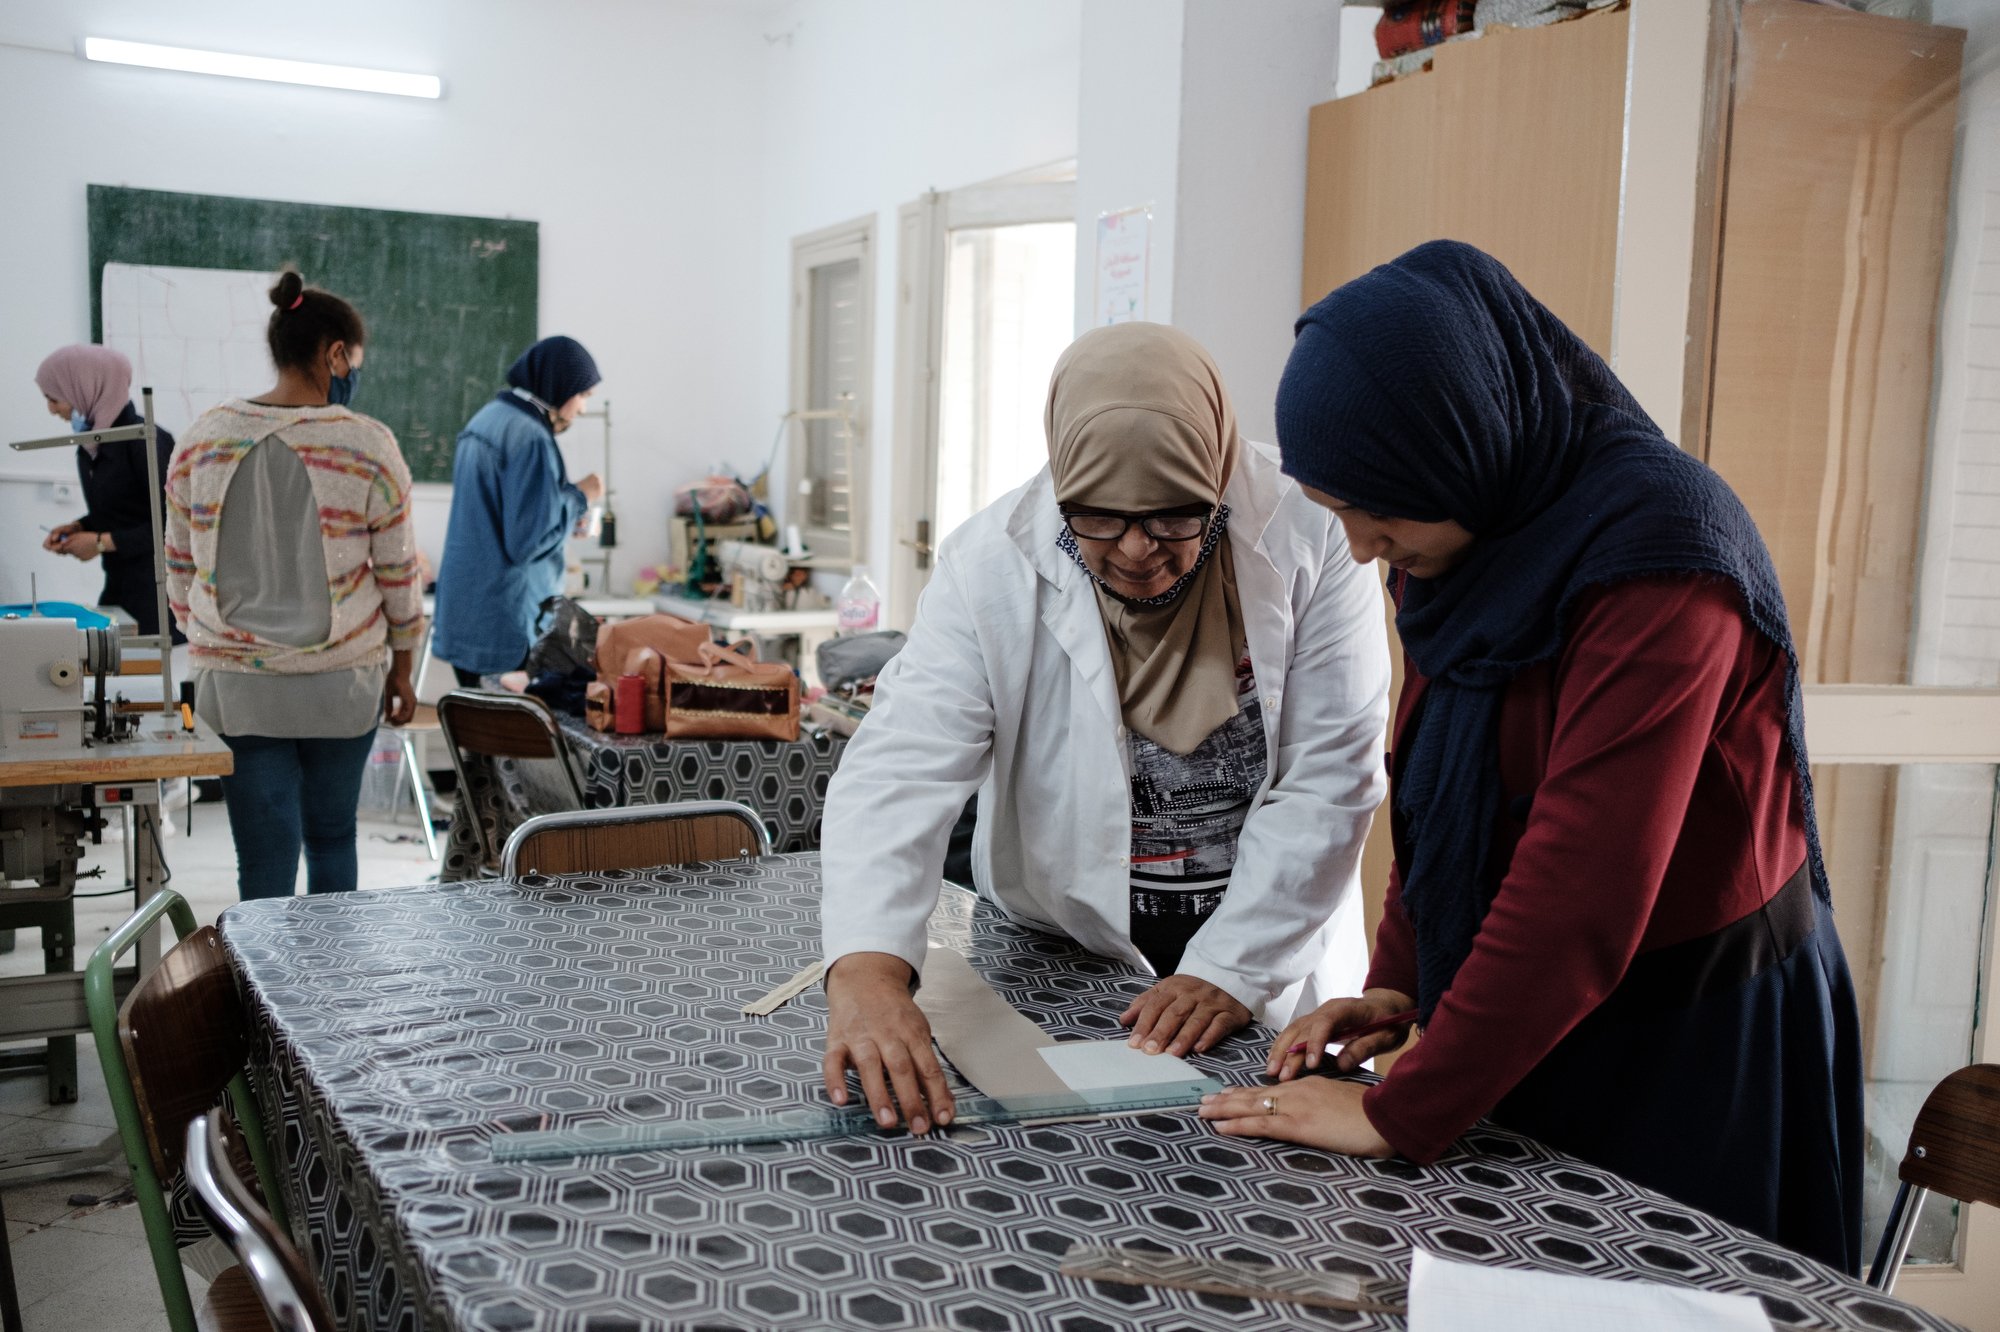  Dans l'atelier de couture du centre Cité commerciale de l'UNFT de Kairouan, Meriem prépare avec sa formatrice, la coupe d'une trousse qu'elle va réaliser. 